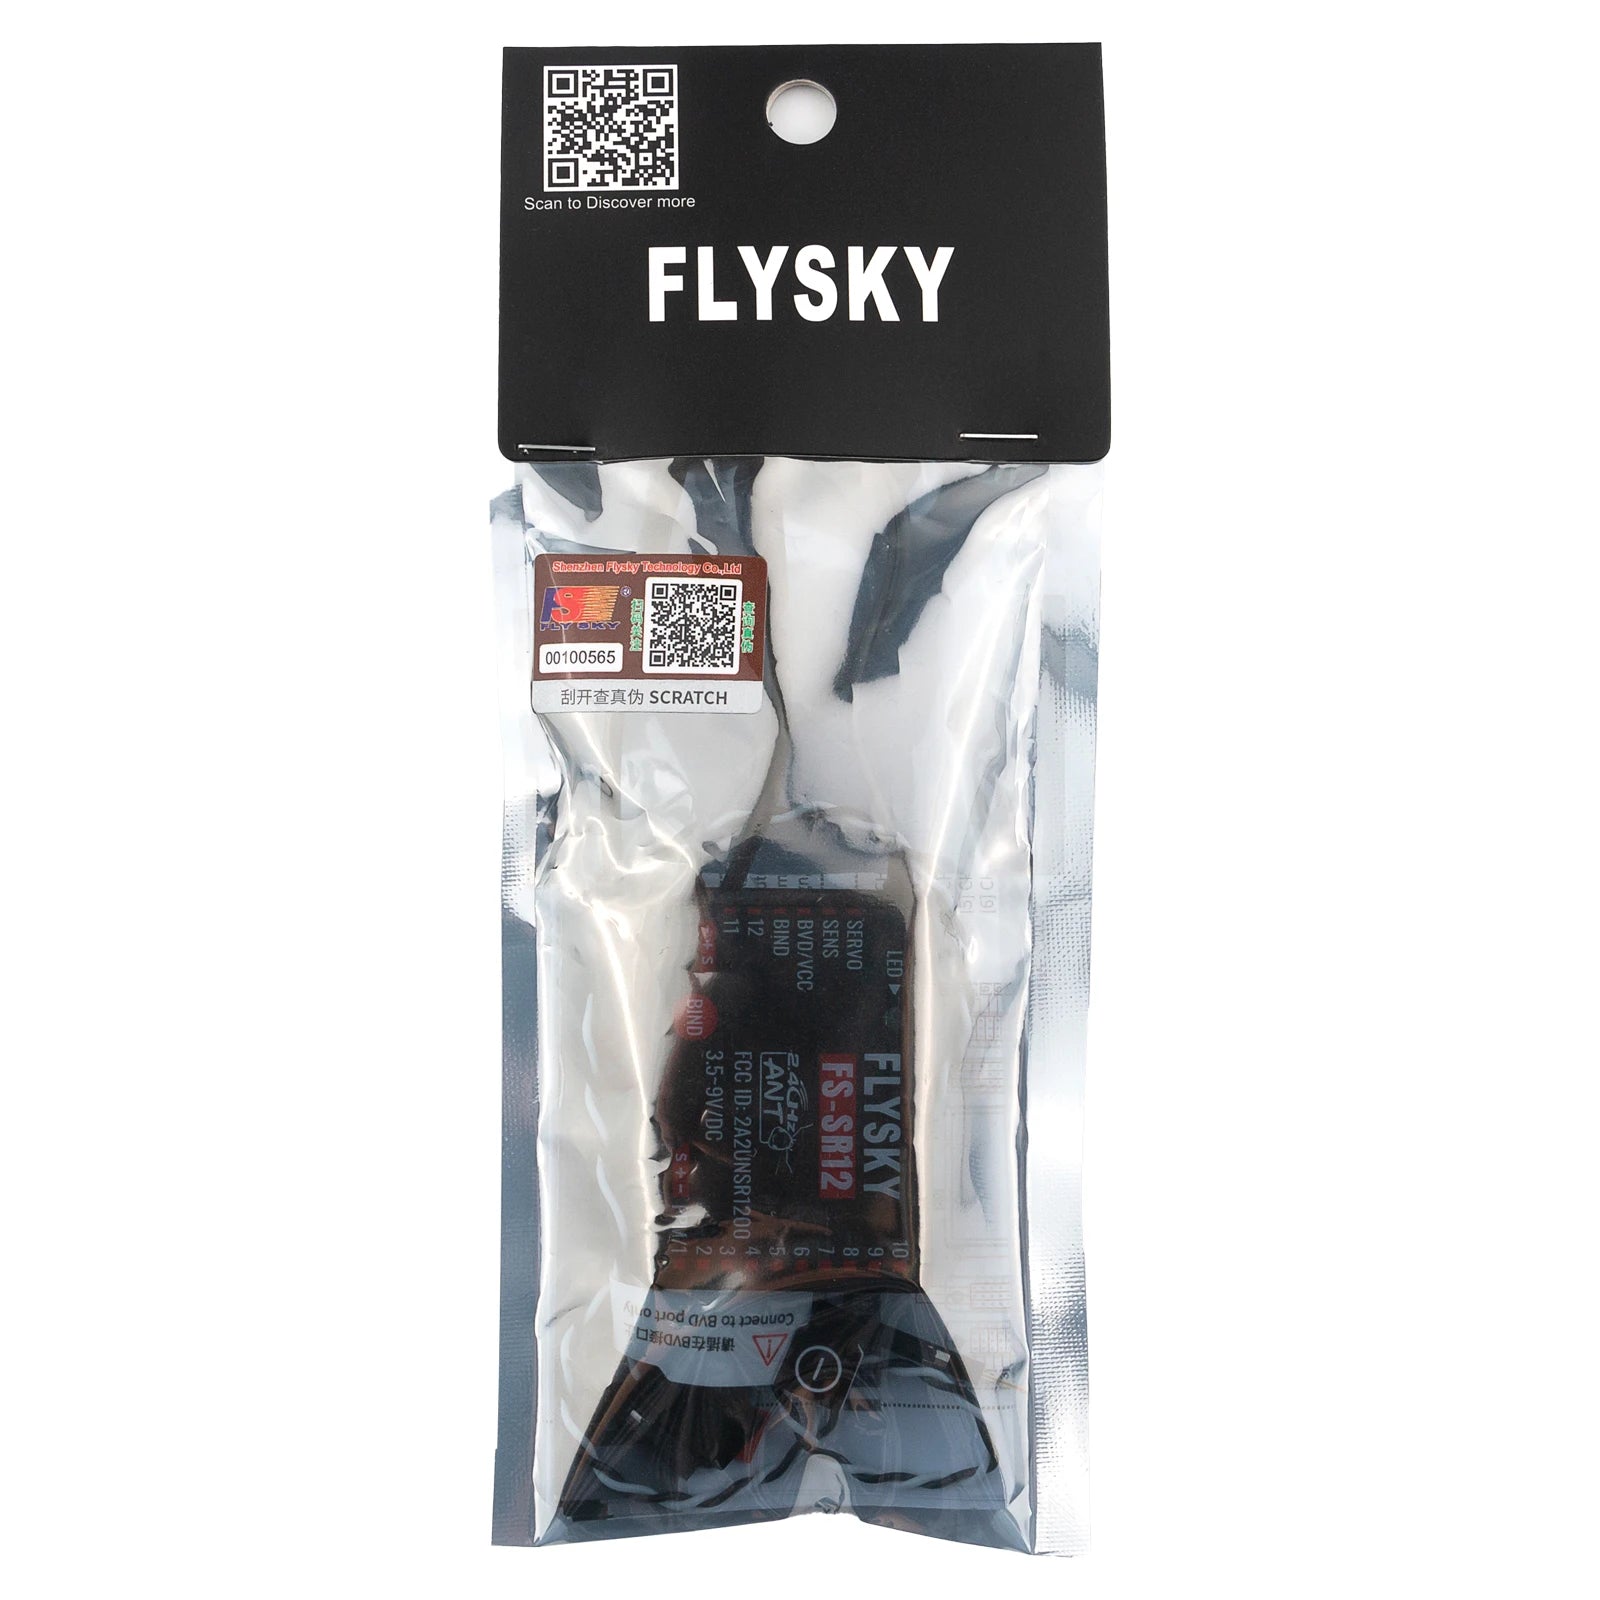 FLYSKY FS-SR12 12CH 2.4G Receiver, FLYSKY ShendhnHly Ly Tochndkgyda Li